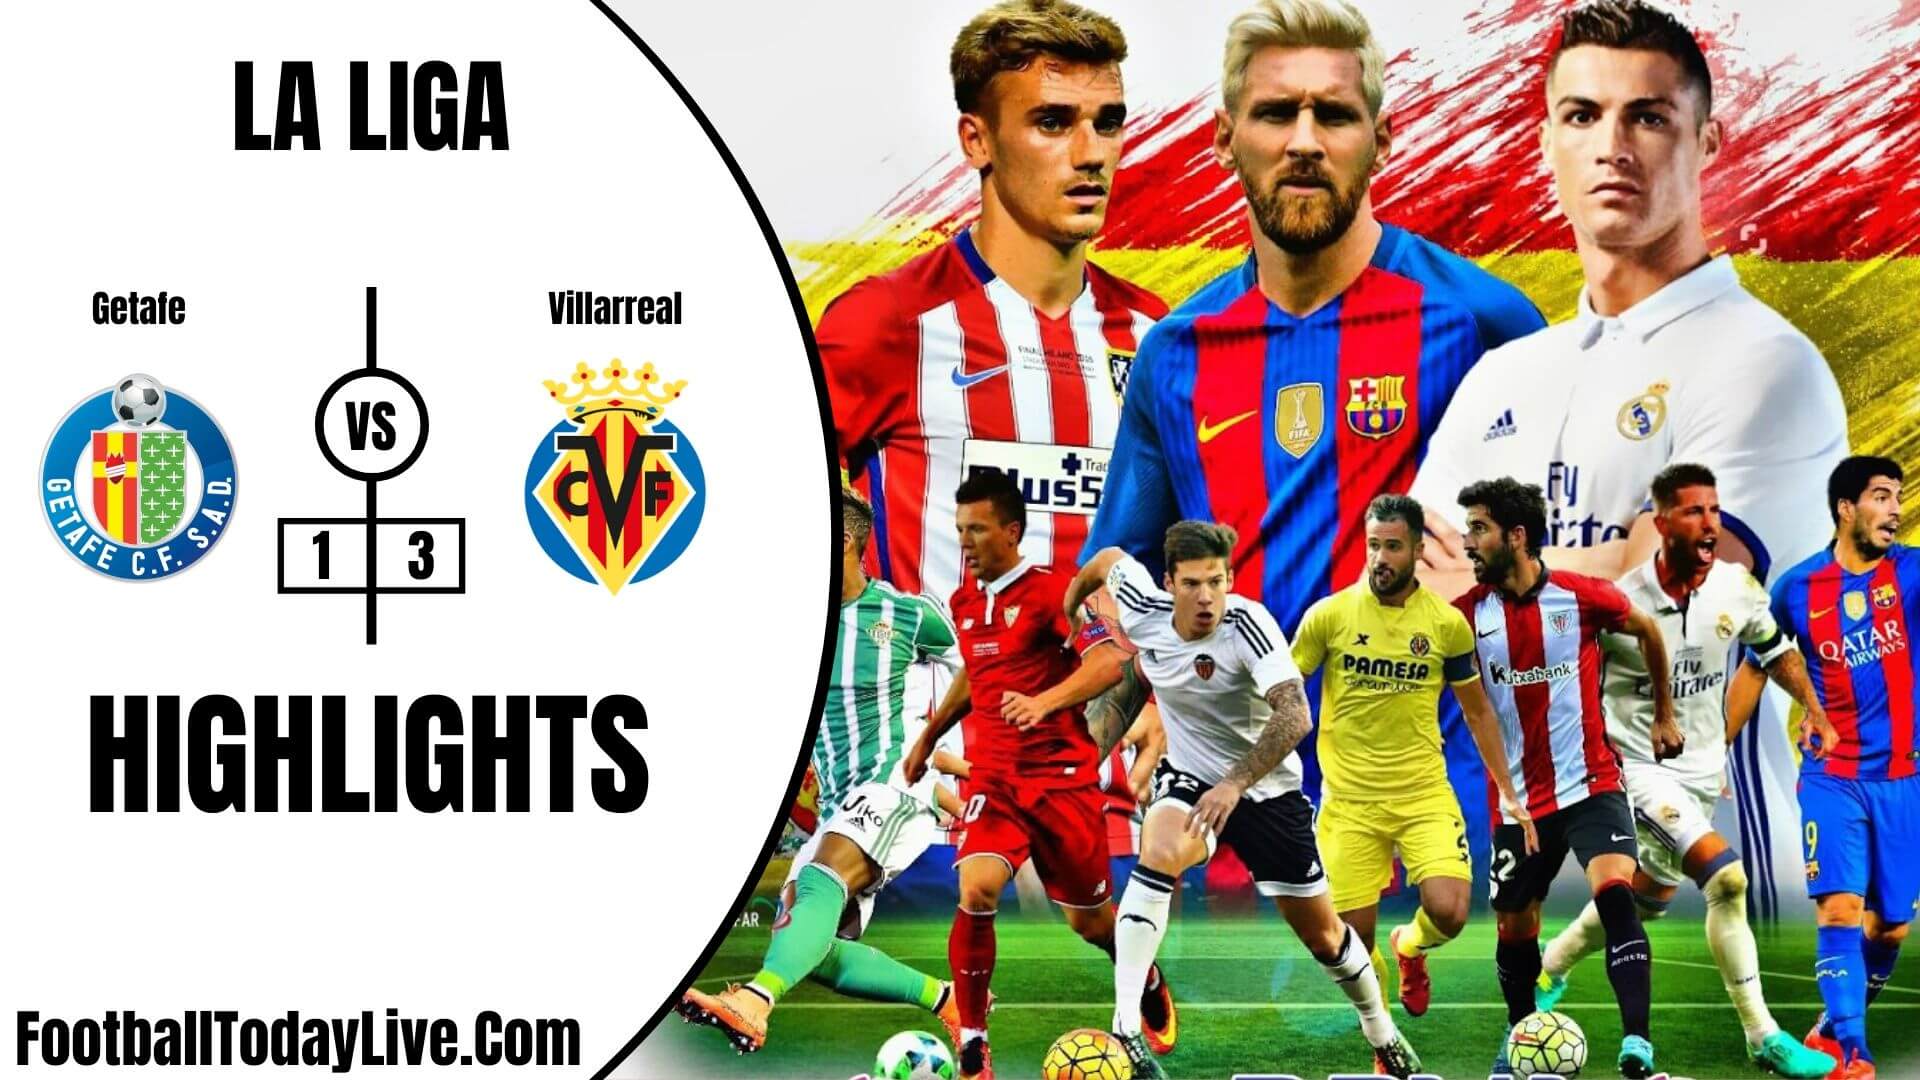 Getafe Vs Villarreal Highlights 2020 La Liga Week 35